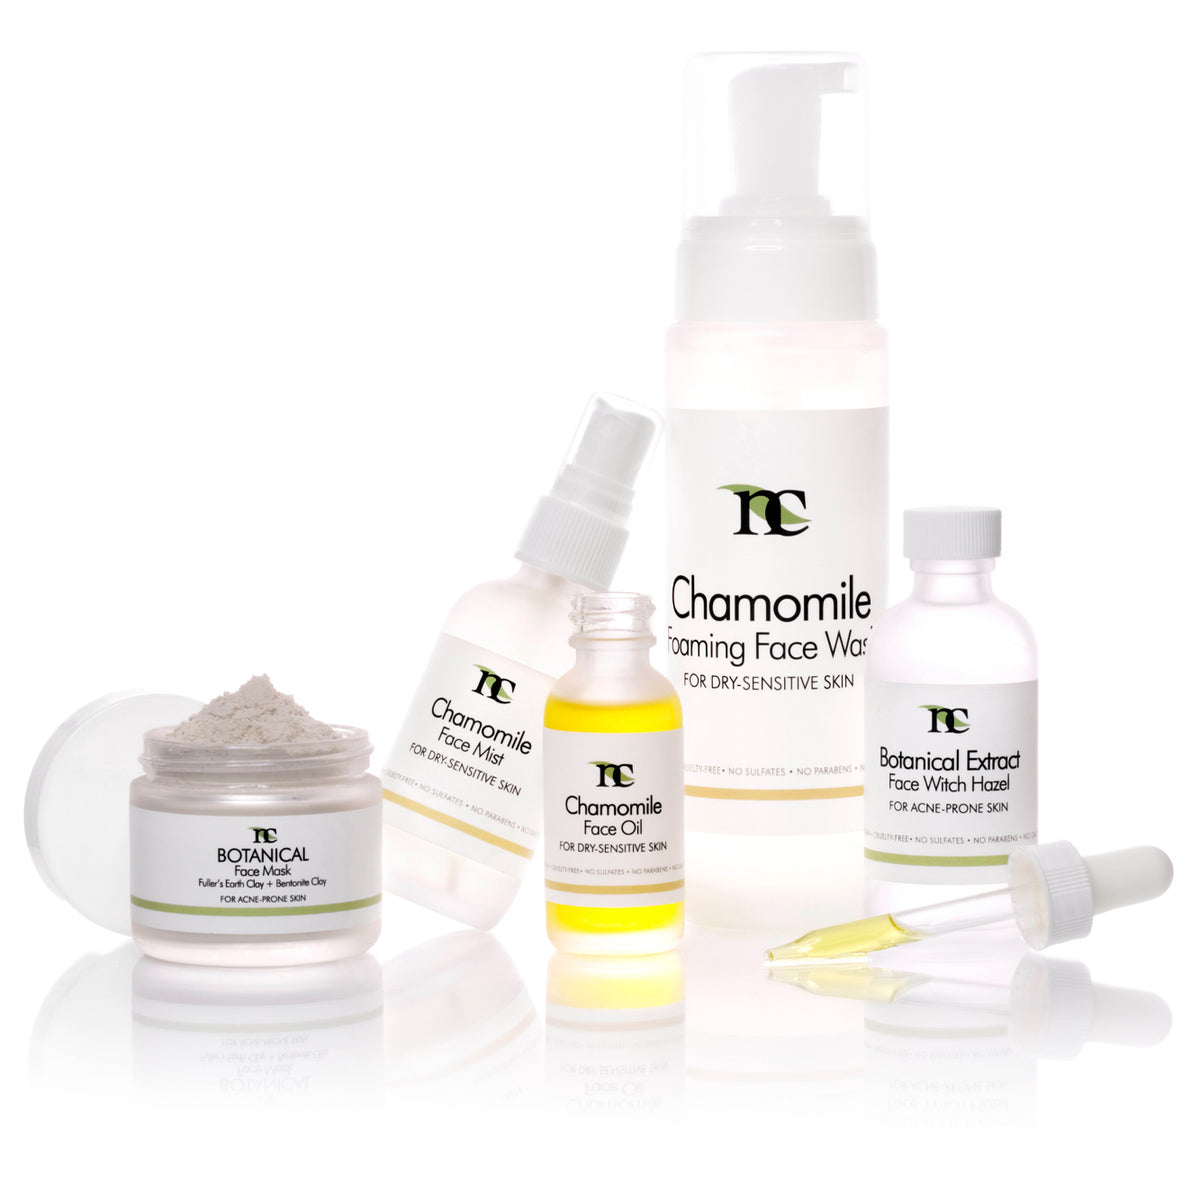 Periodic Skincare Set product photo on white background